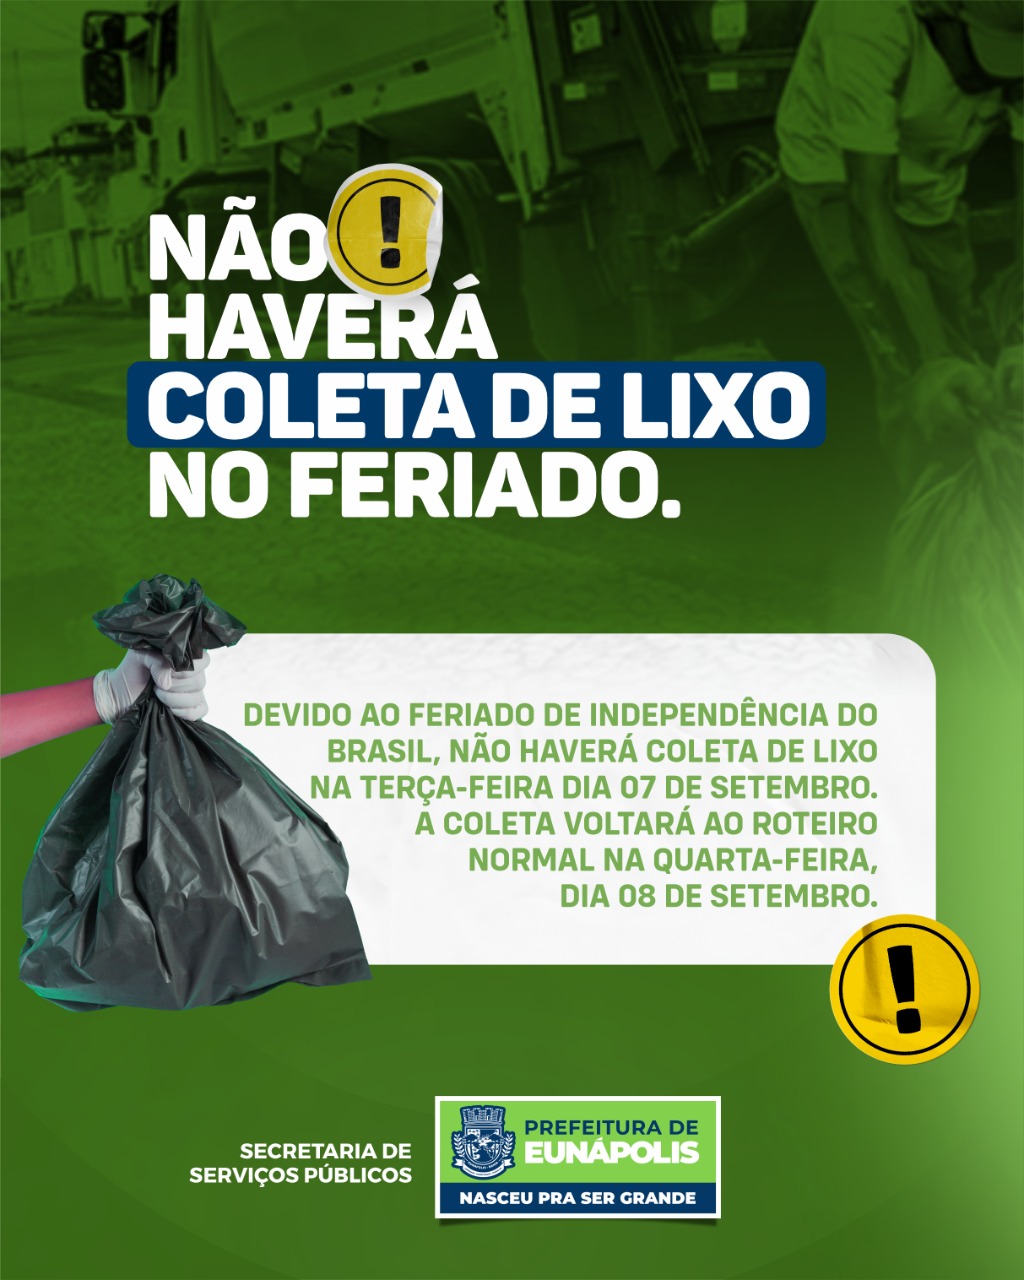 Prefeitura de Eunápolis avisa que não haverá coleta de lixo nesta terça-feira (07 de Setembro) 340